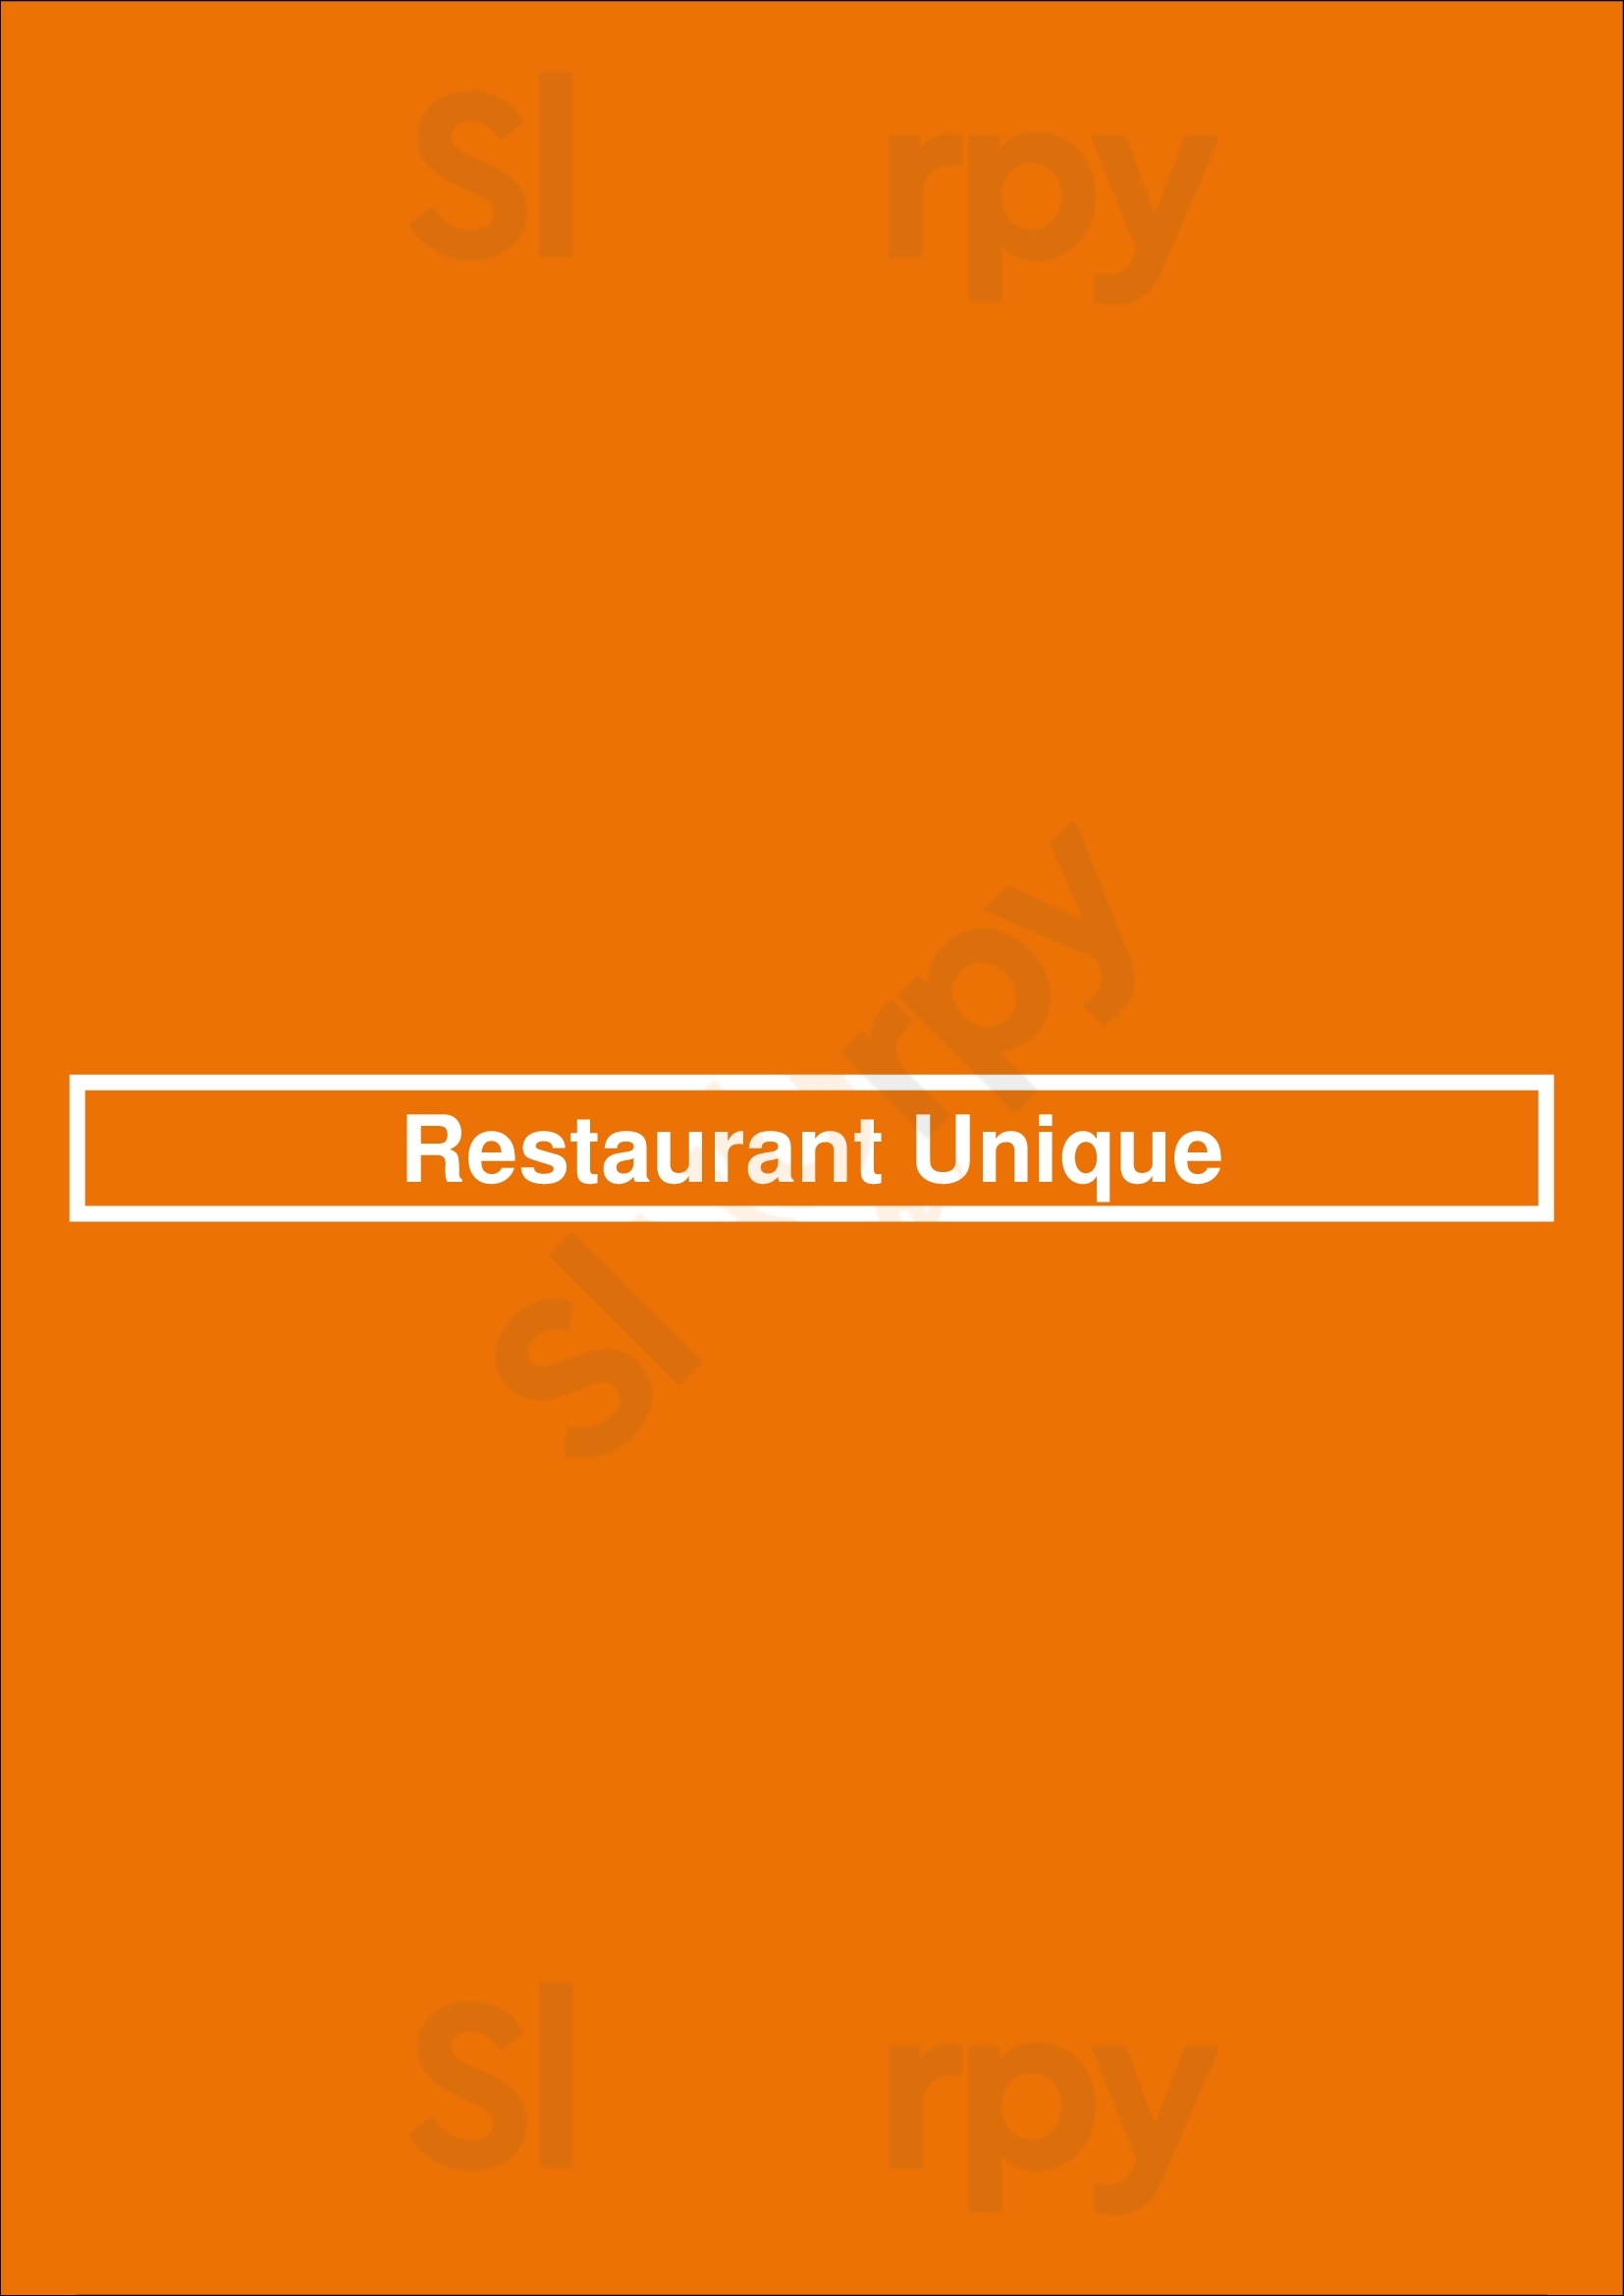 Restaurant Unique Gouda Menu - 1